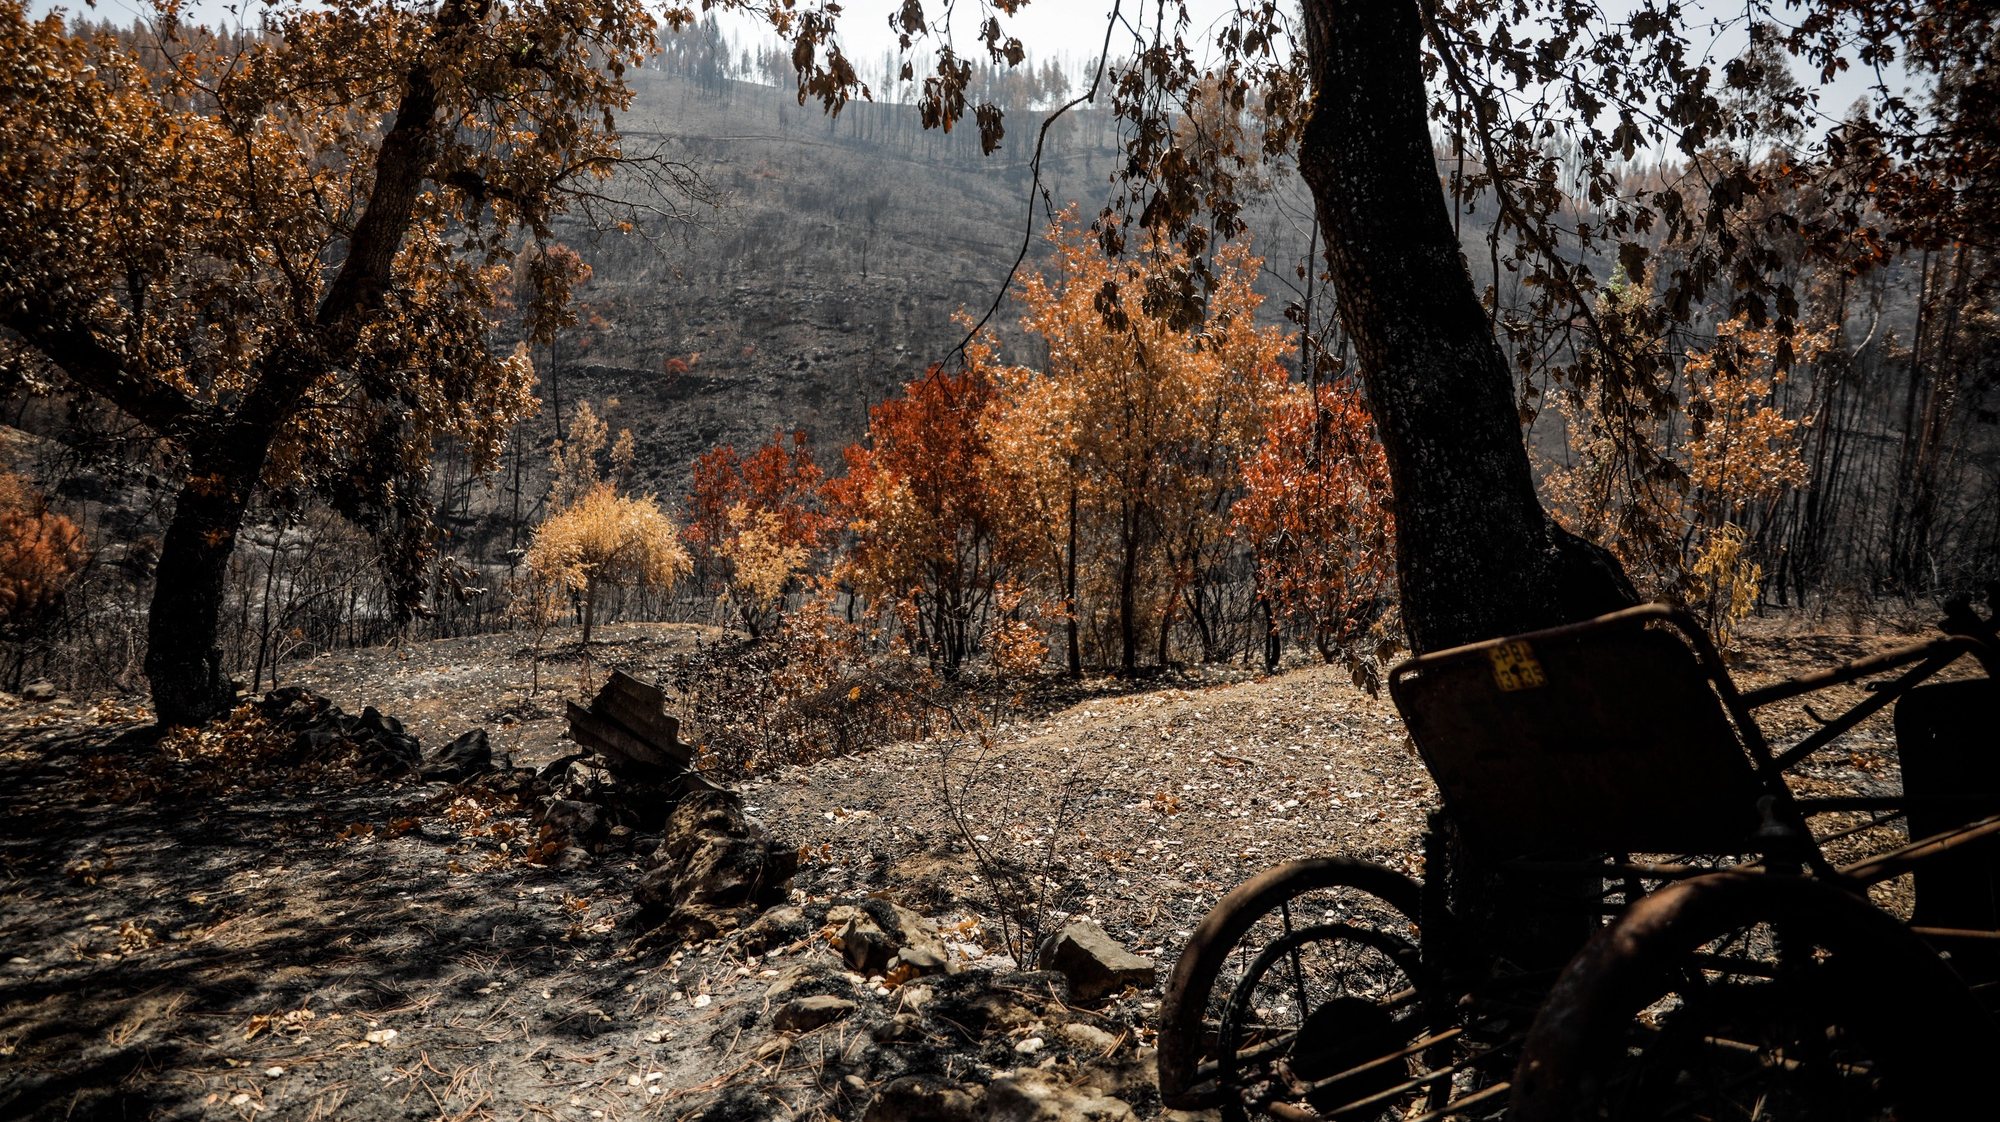 Vista da floresta queimada pelas chamas no incêndio de julho na Aldeia de Mouta, na freguesia de Almoster, Alvaiázere, 8 de agosto de 2022. (ACOMPANHA TEXTO DE 10 DE AGOSTO DE 2022). PAULO CUNHA/LUSA